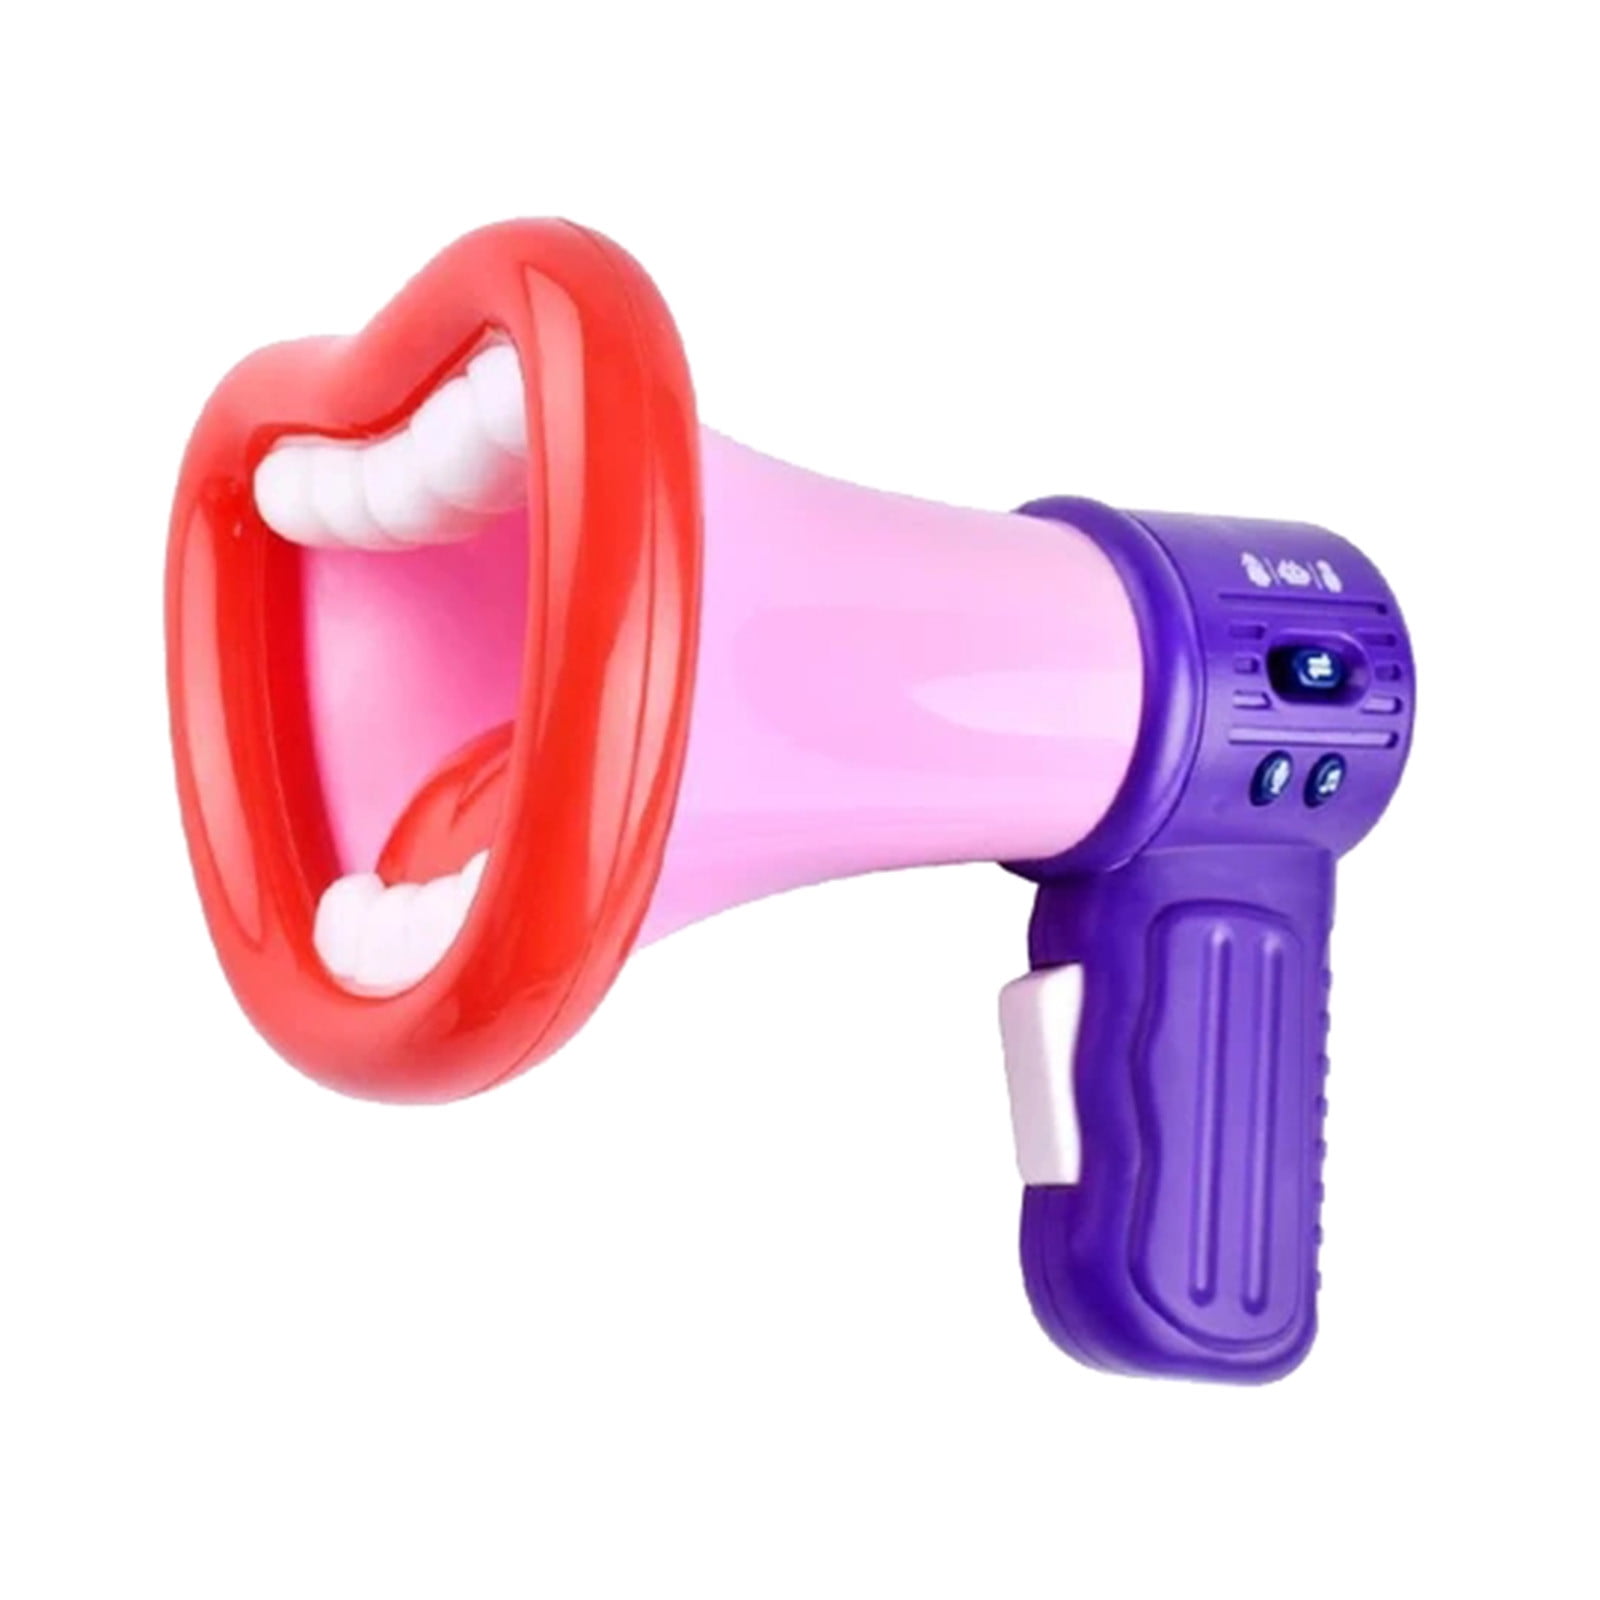 Kids Megaphone Games Toys Bullhorns Siren Sounds Loud Speaker Son Gifts